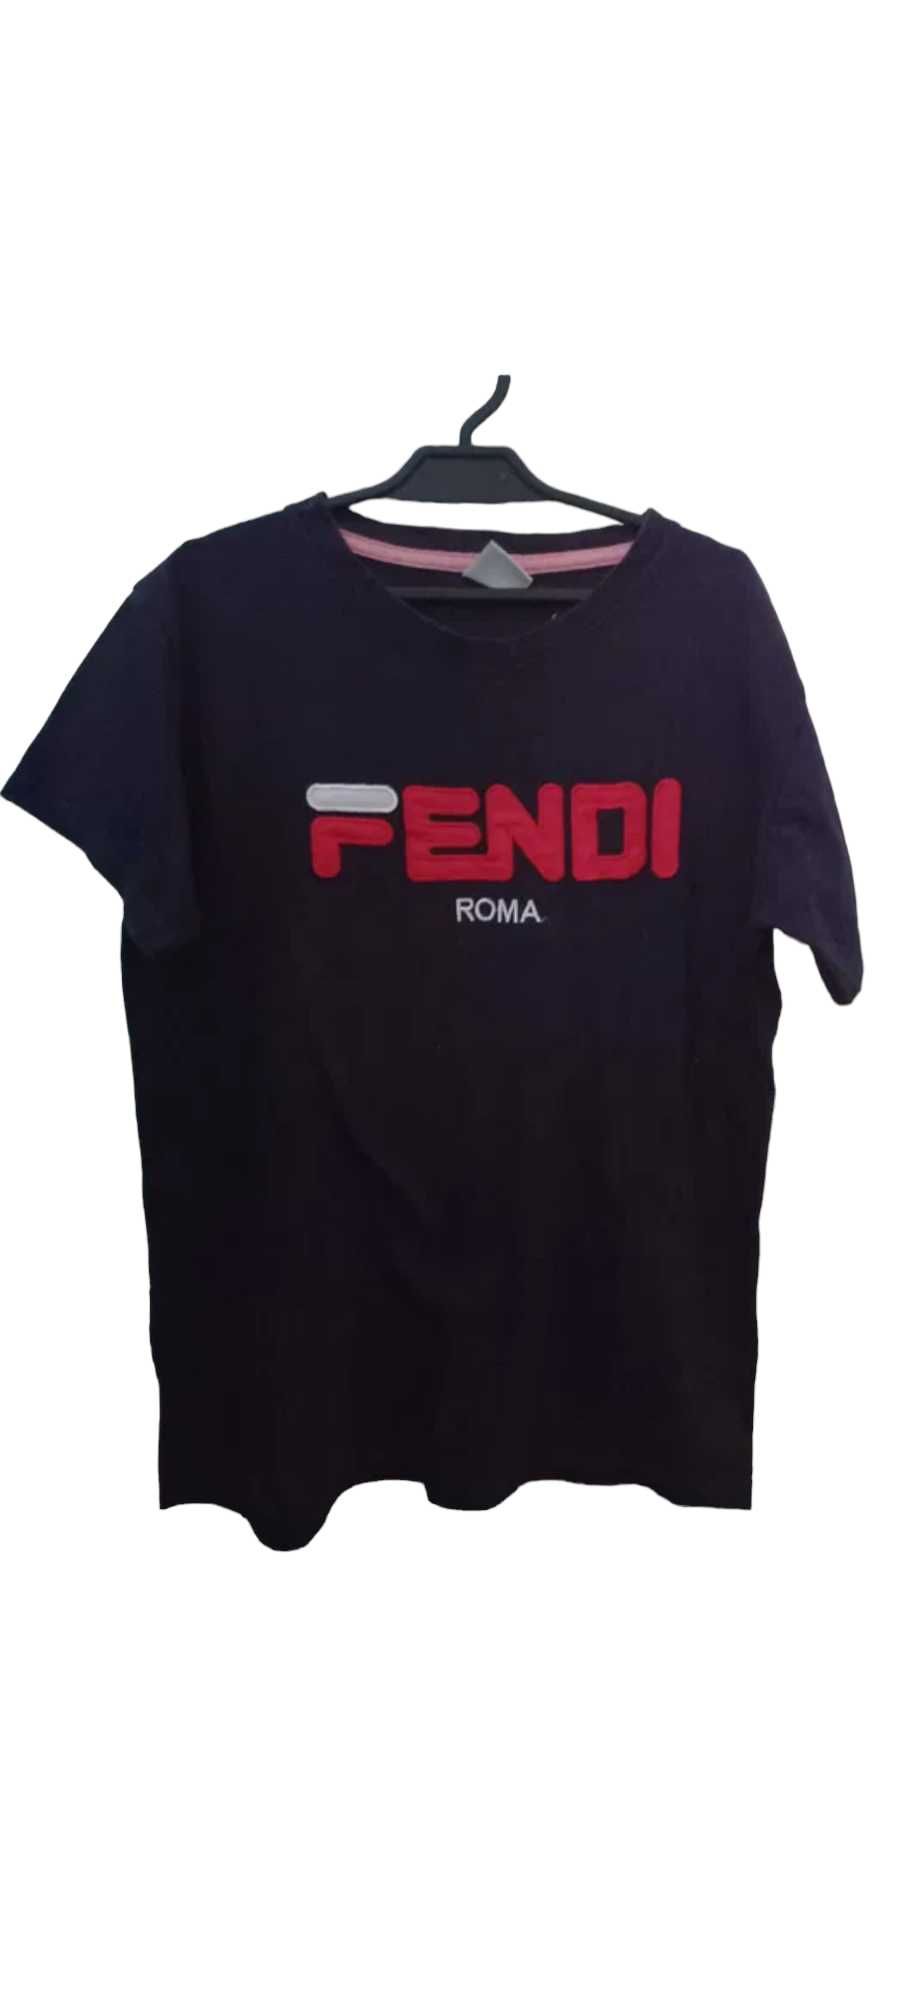 T-shirt dla chłopca Fendi rozmiar 134